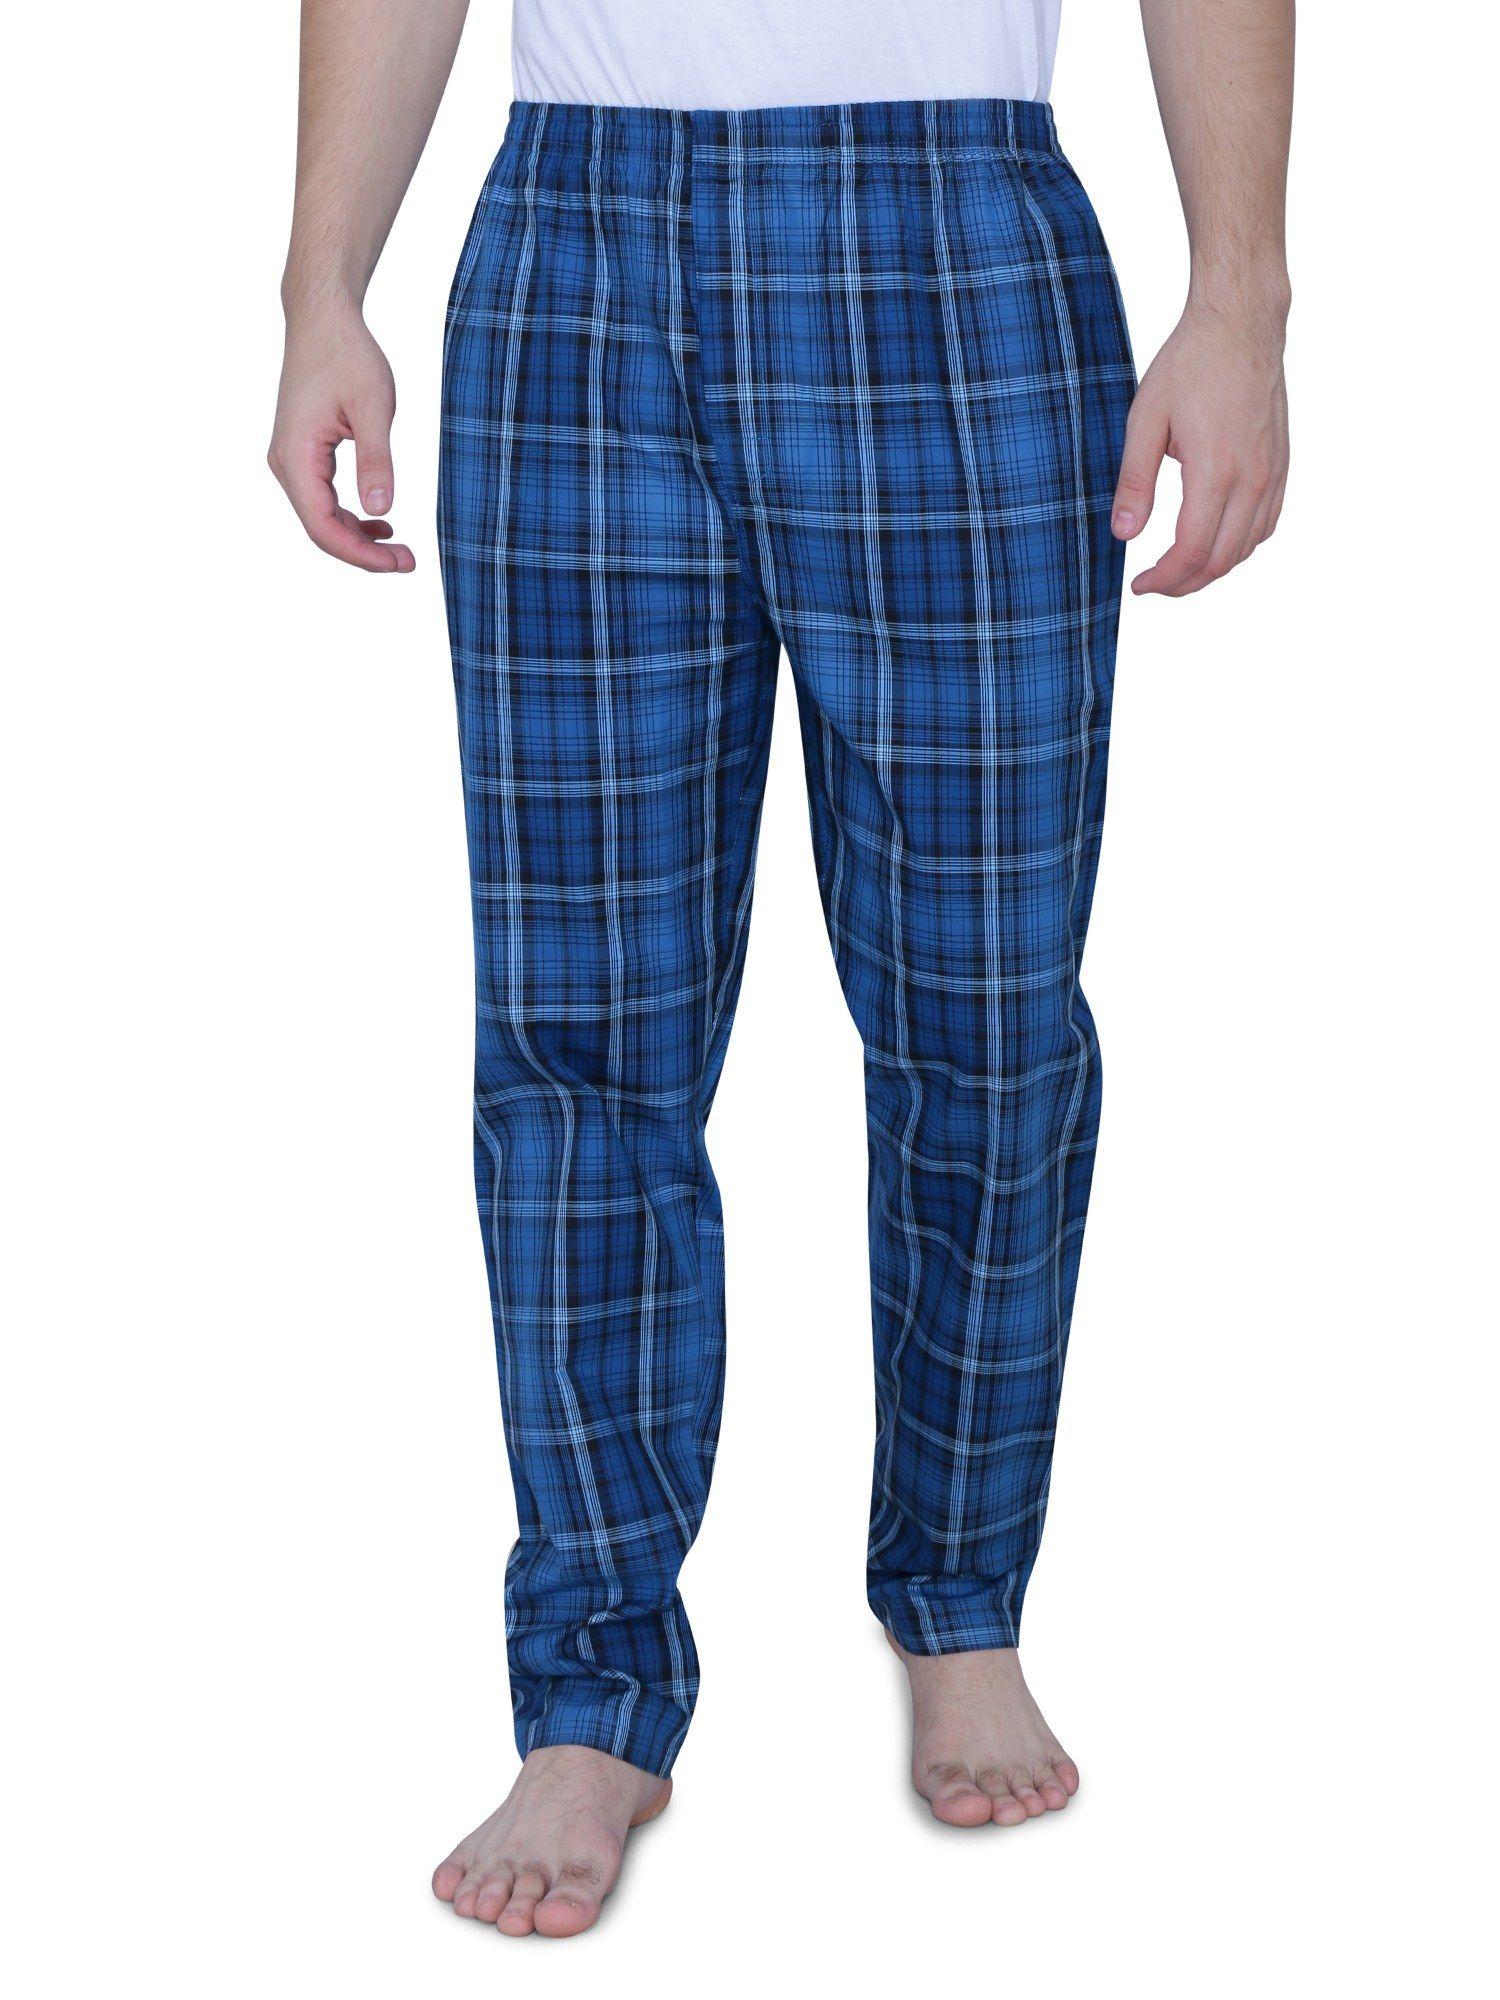 super combed cotton carbon finish twill checks pyjama